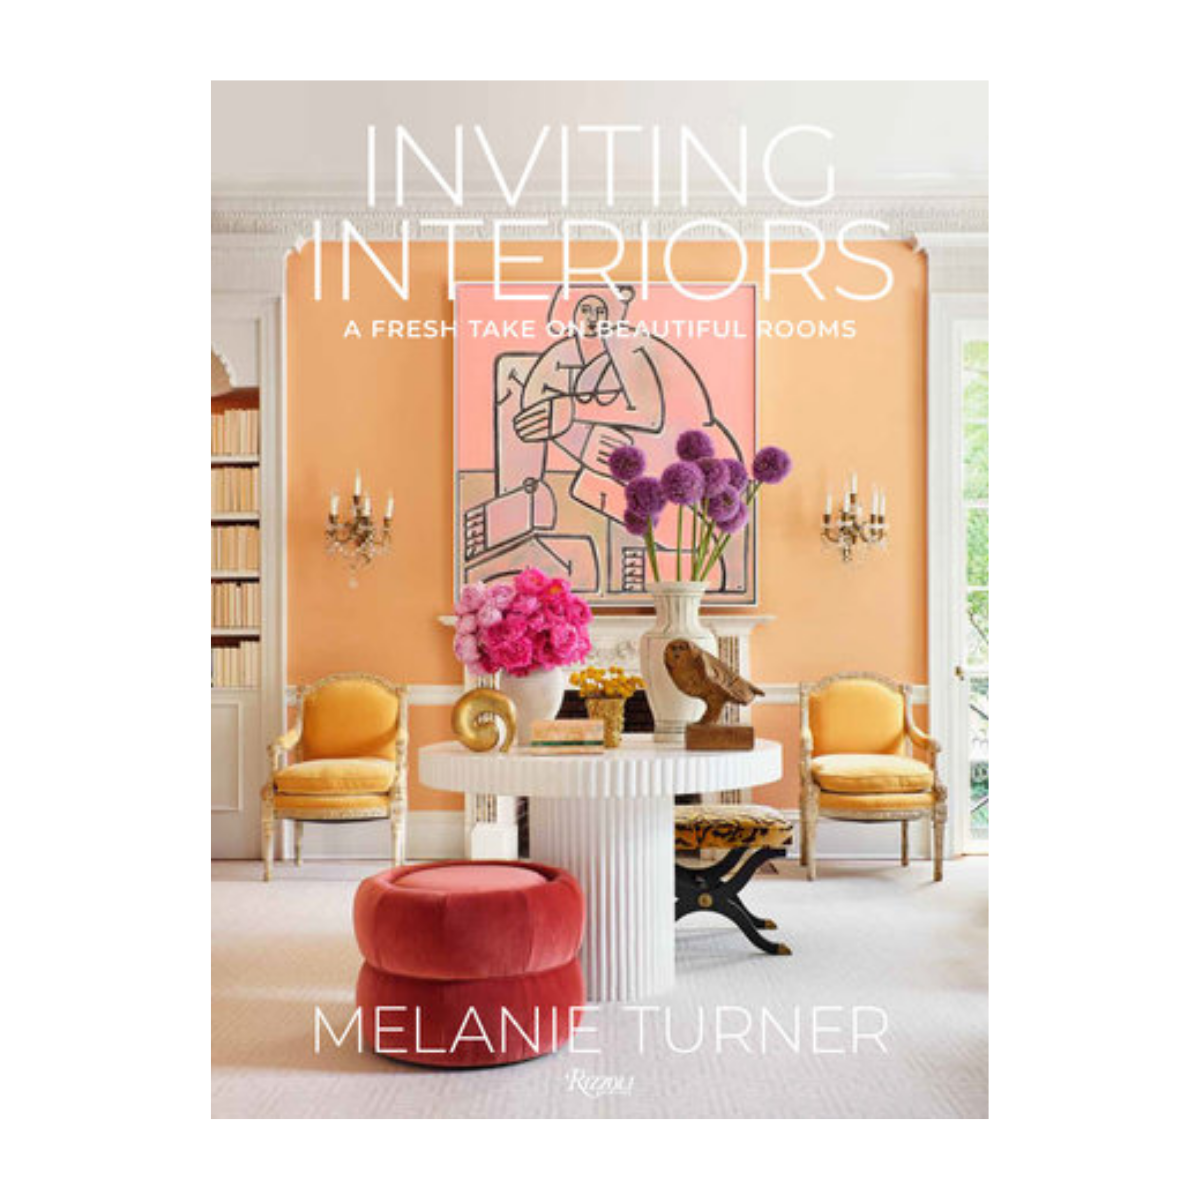 "Inviting Interiors"